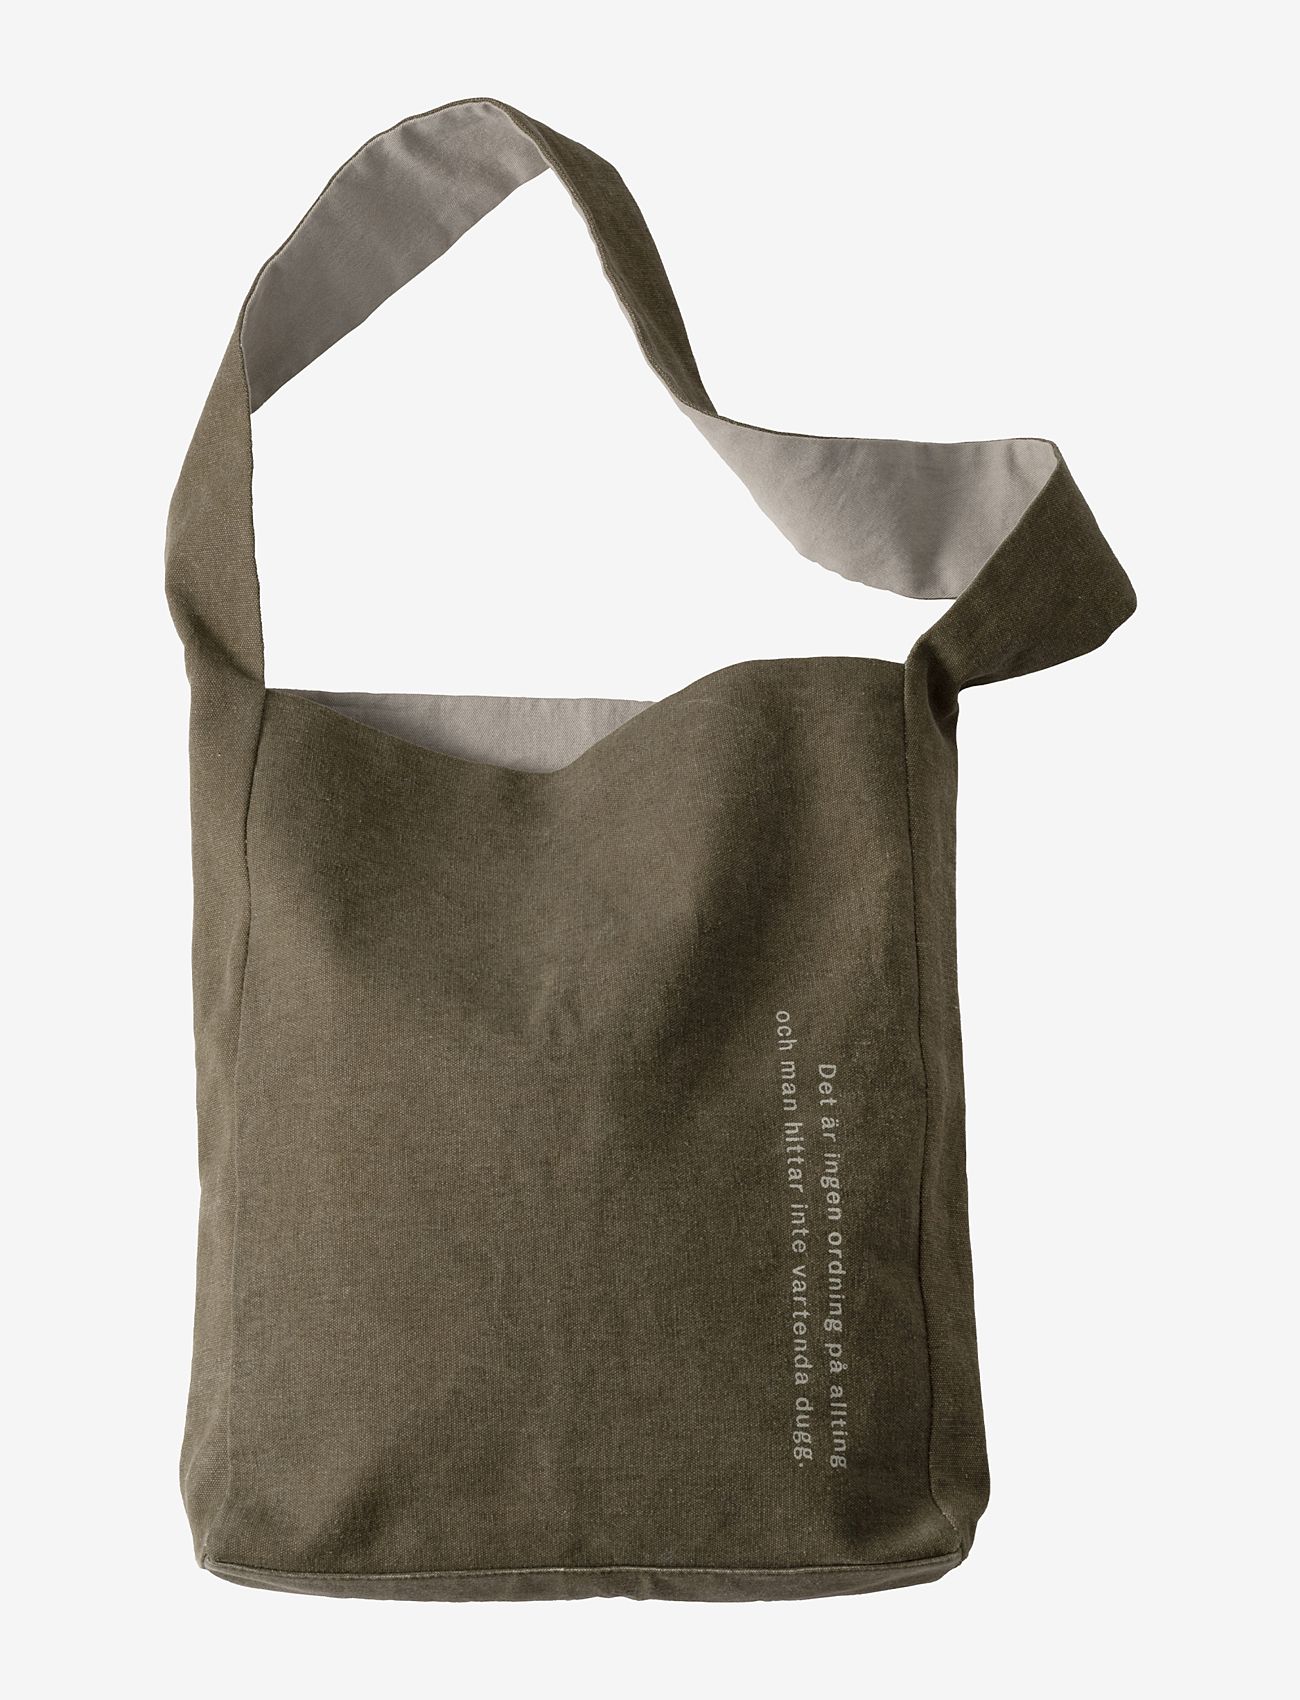 Design House Stockholm - Astrid Lindgren Tote bag - tote bags - olive - 0